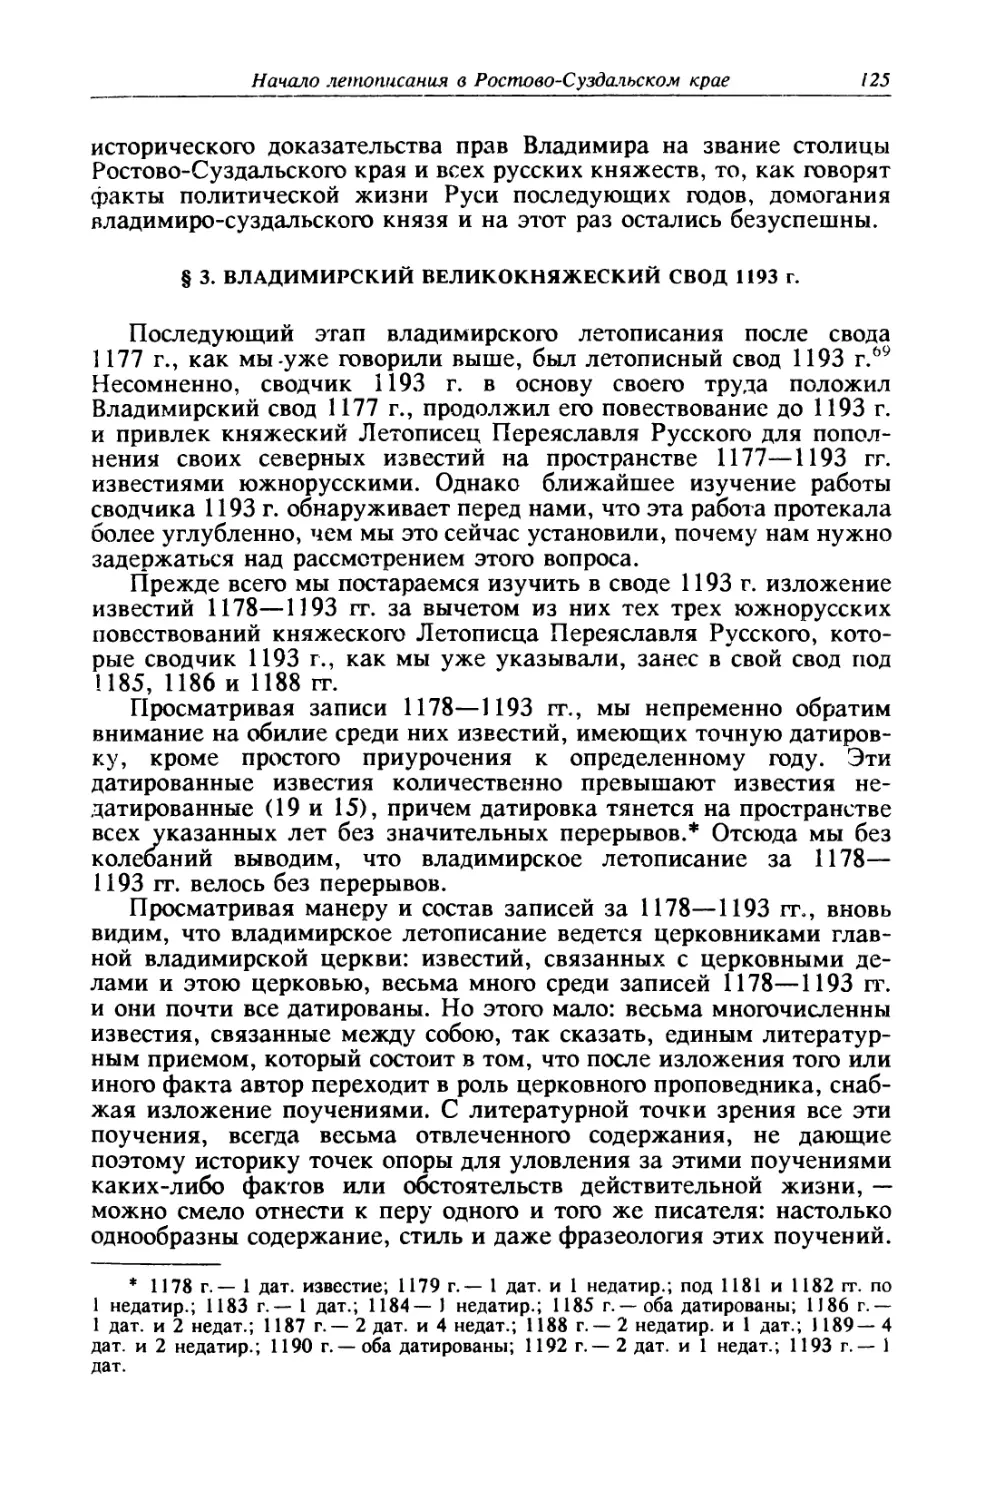 § 3. Владимирский великокняжеский свод 1193 г